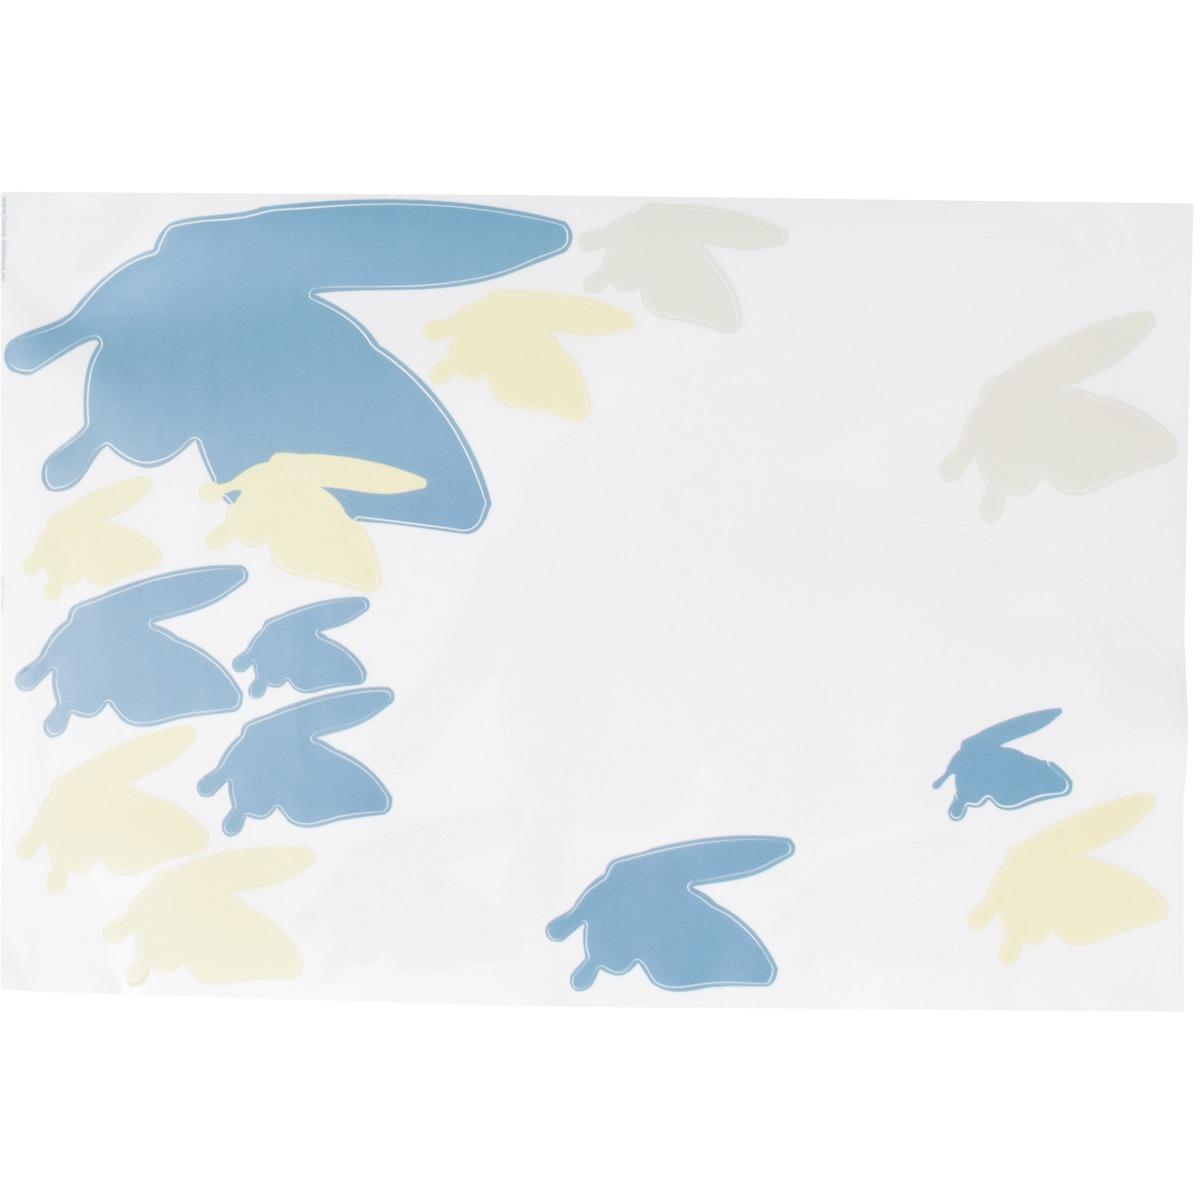 Sticker adhésif déco papillons - 50 x 70 cm - Bleu, vert, blanc